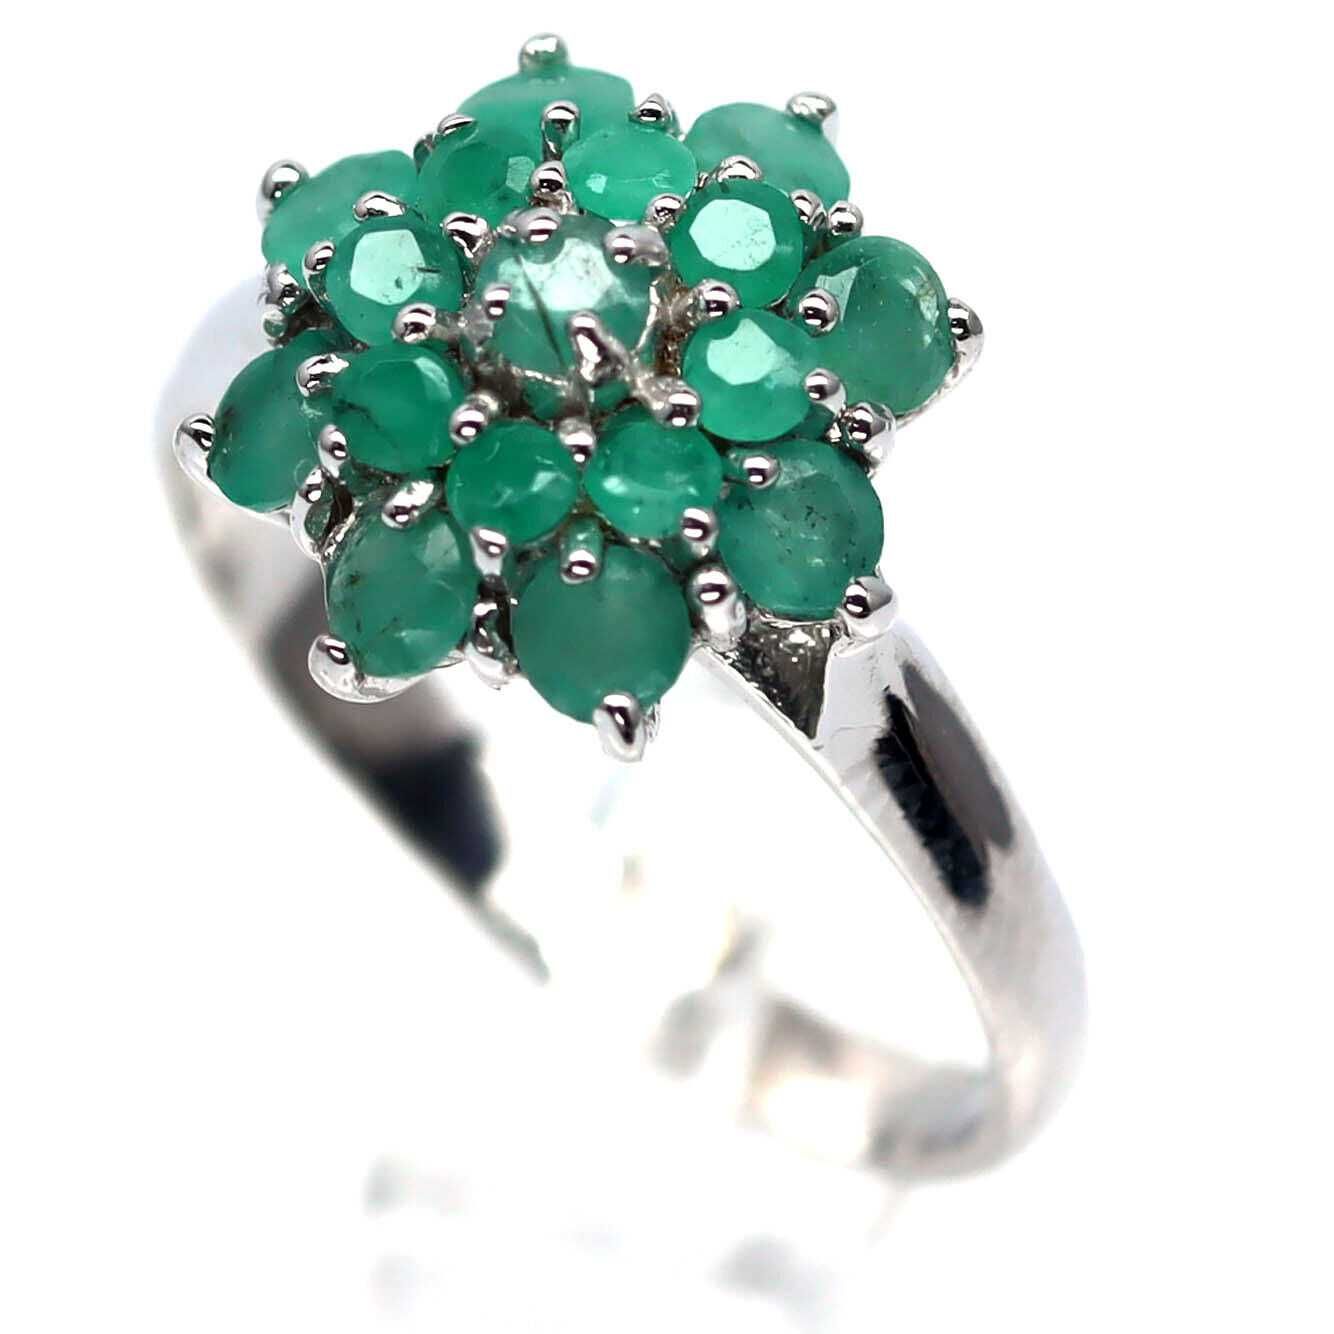 Кольцо с зеленым изумрудом, серебро 925 пробы, , размер 17,5